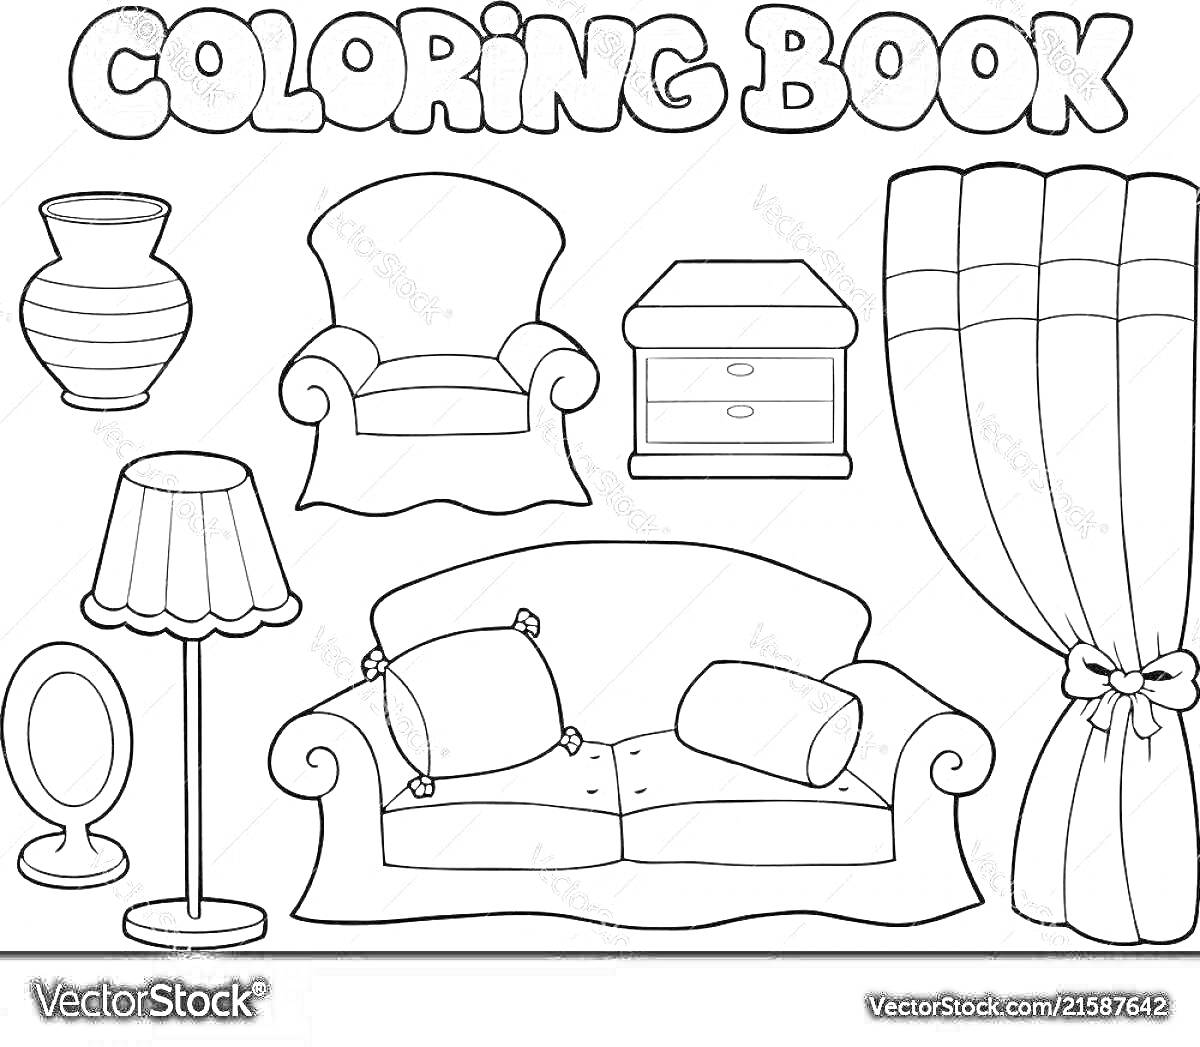 Раскраска Цветник книга с мебелью для кукол: ваза, кресло, тумбочка с ящиками, шторы, круглое зеркало, напольная лампа, диван с подушками